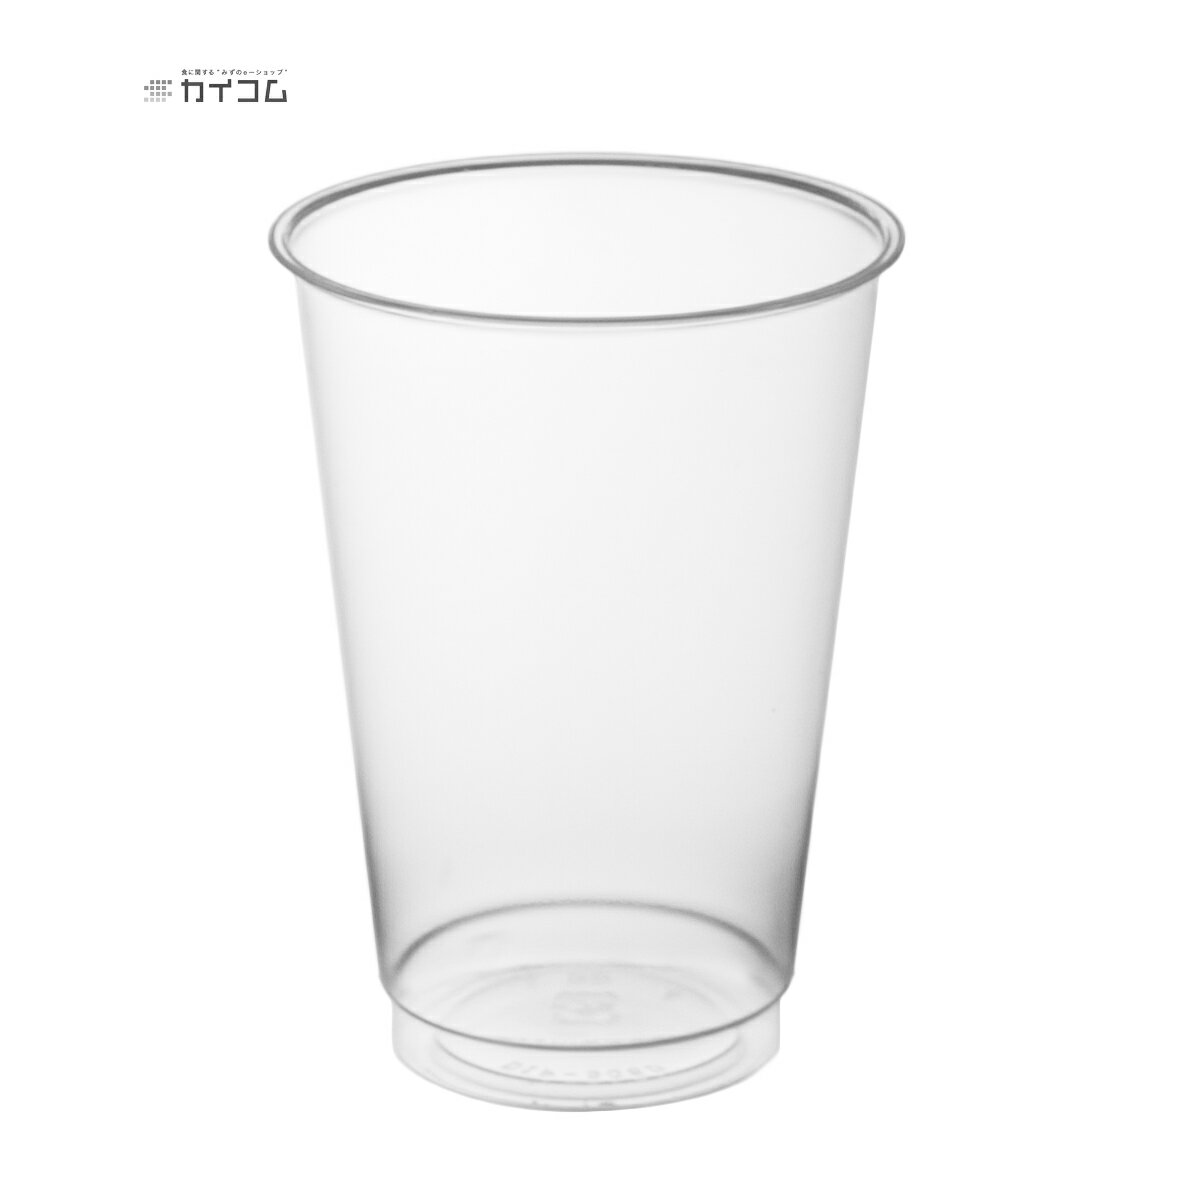 プラスチックカップ 使い捨て 業務用 コップ ニュー プロマックス DIP-305D サイズ : φ77×105mm(305ml) 入数 : 1000